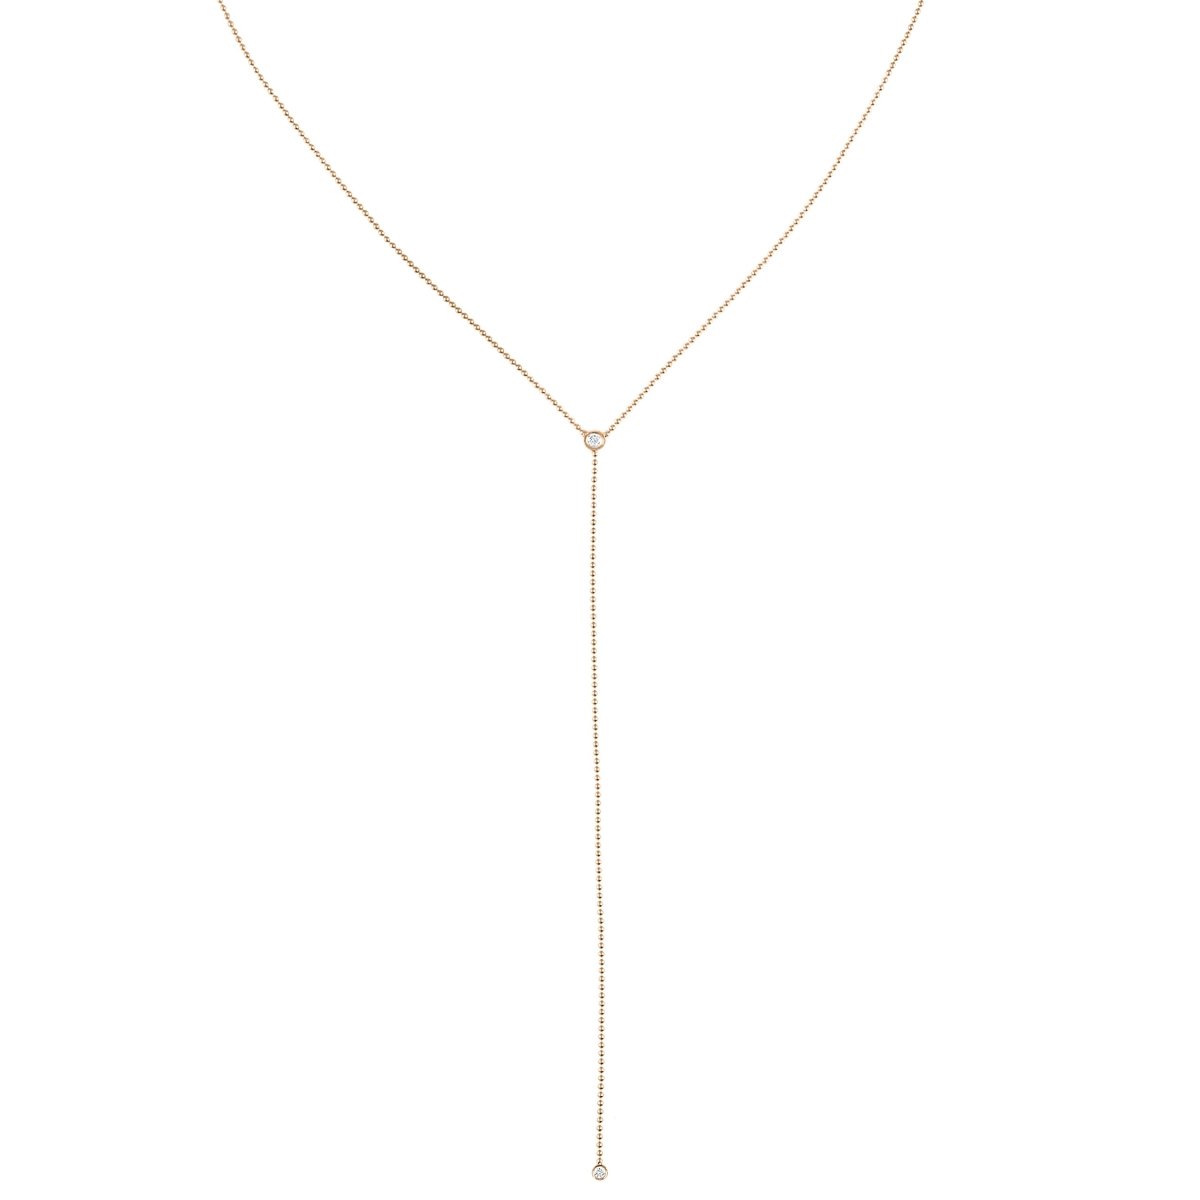 Smoky quartz beaded lariat necklace with pearl - Sundara Joon